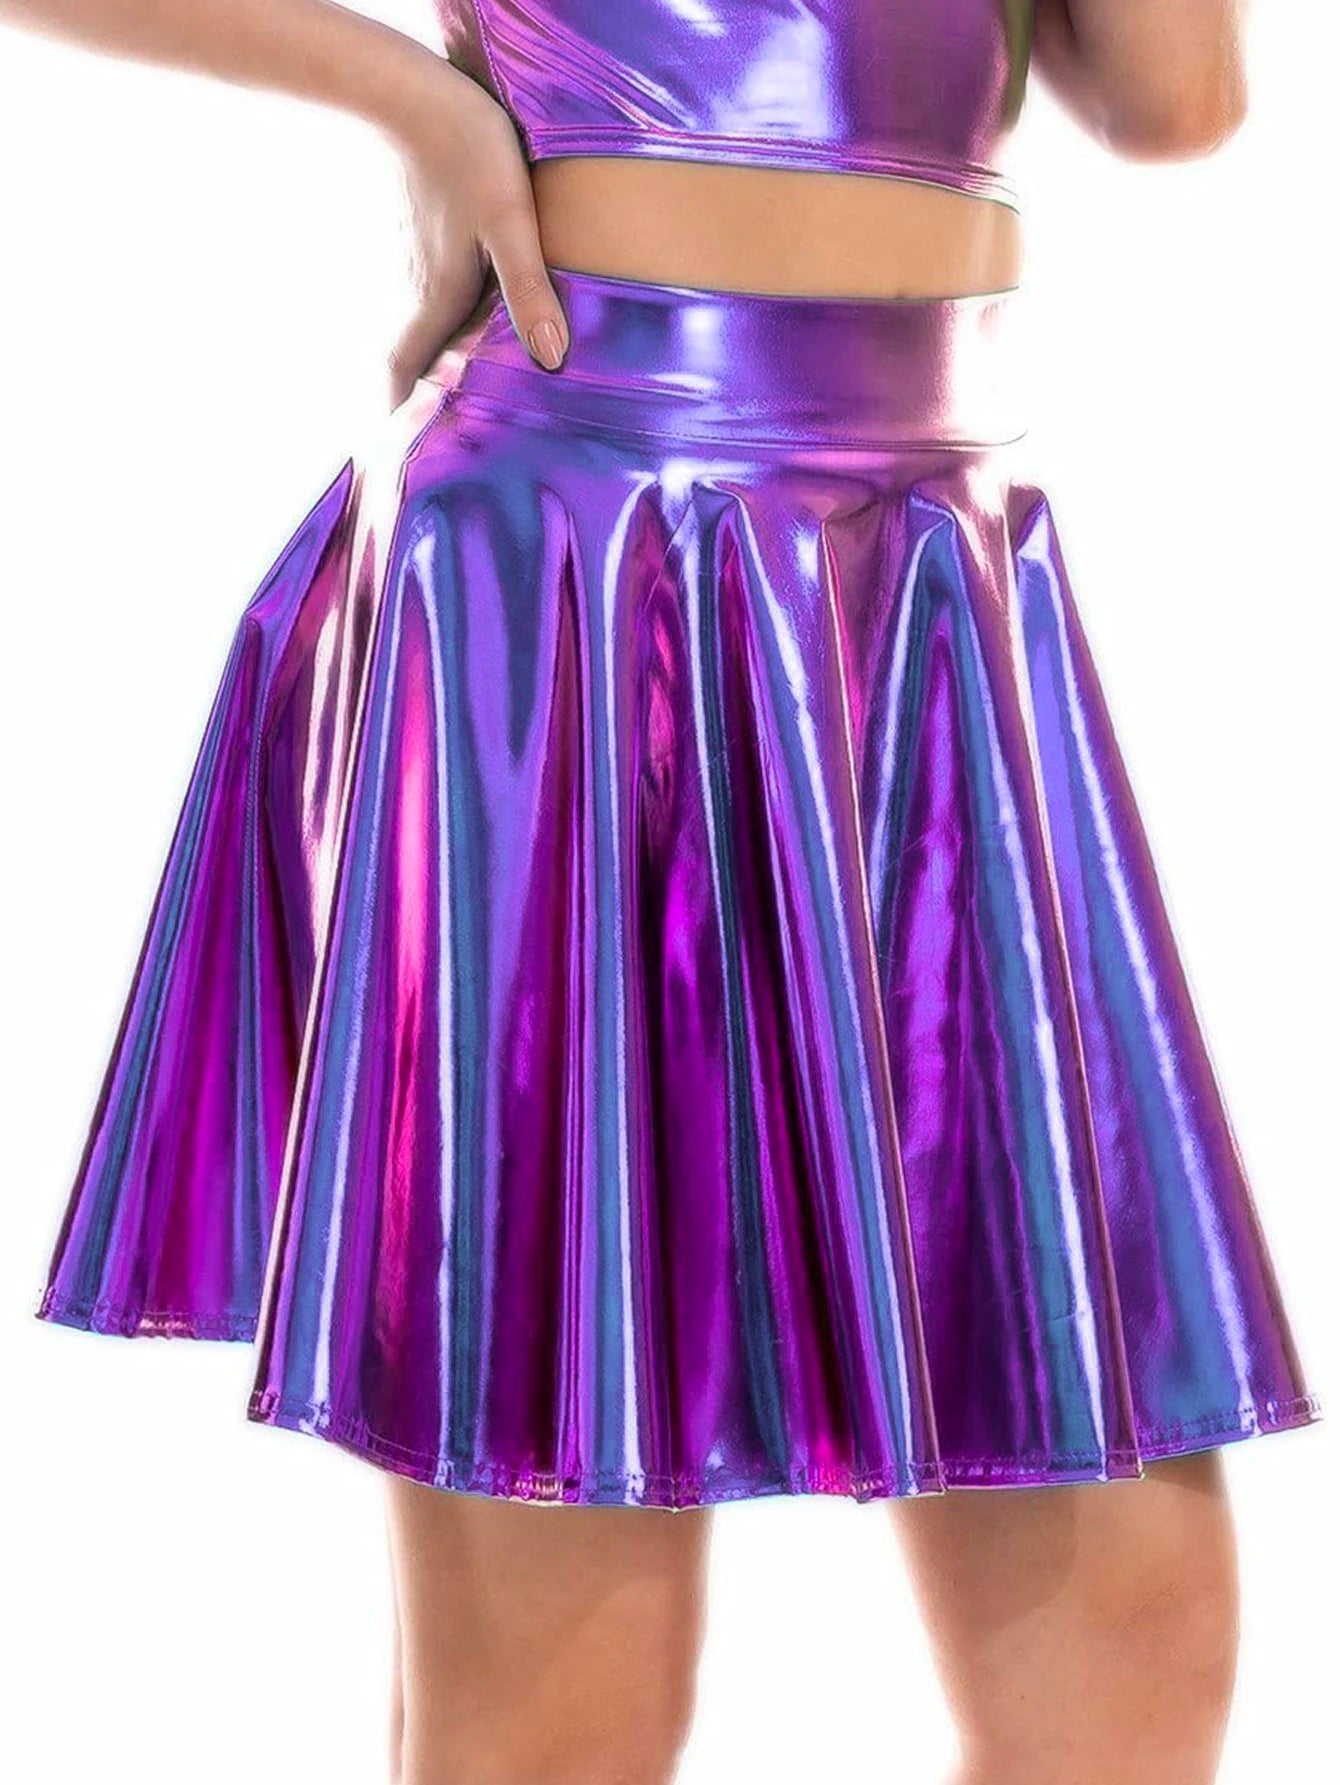 Colorful Short Skirt For Women